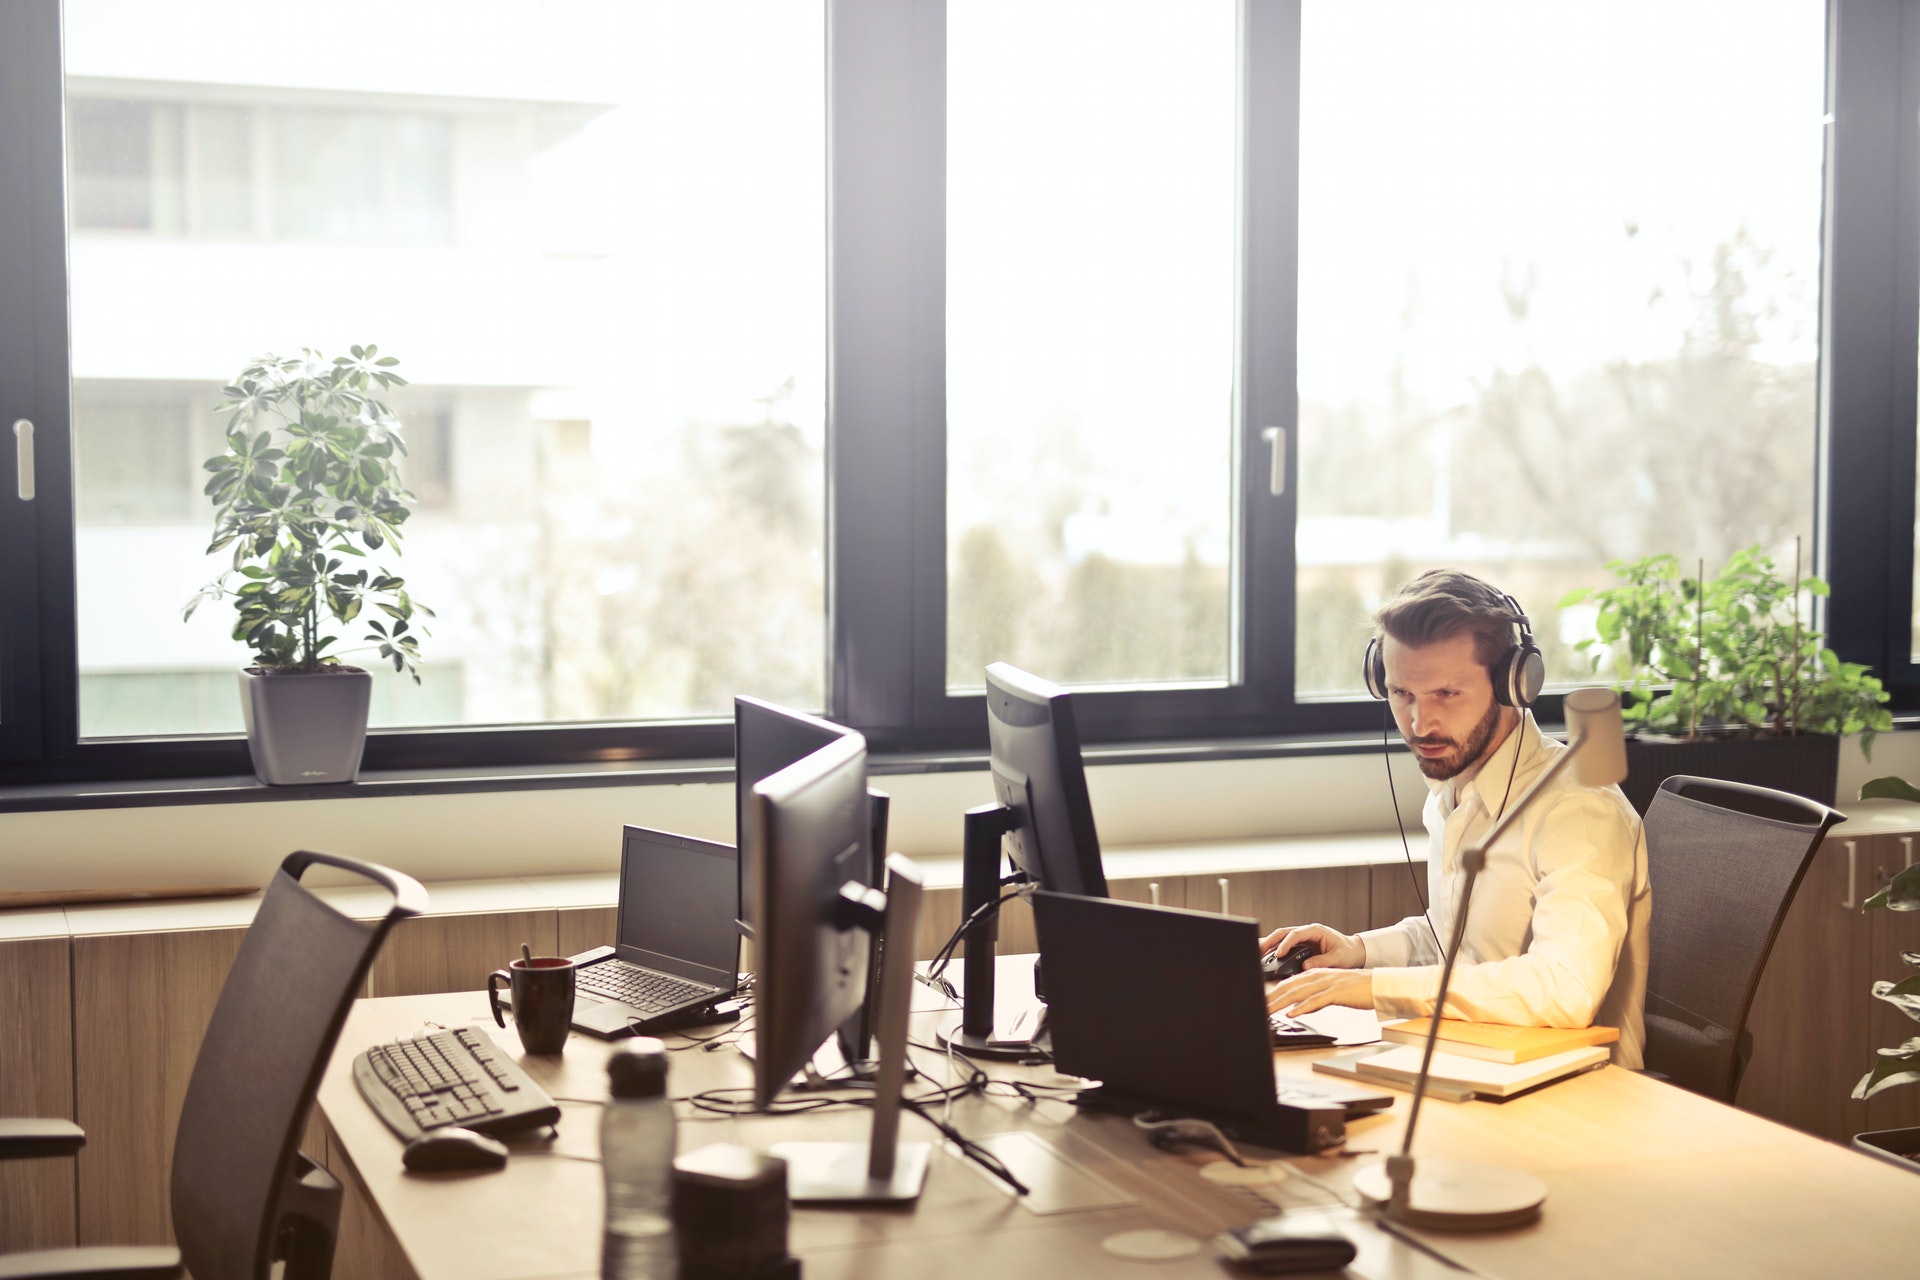 Empresário trabalhando em uma mesa de escritório com computadores e usando um fone de ouvido. Imagem ilustrativa do texto montar um negócio, dicas.